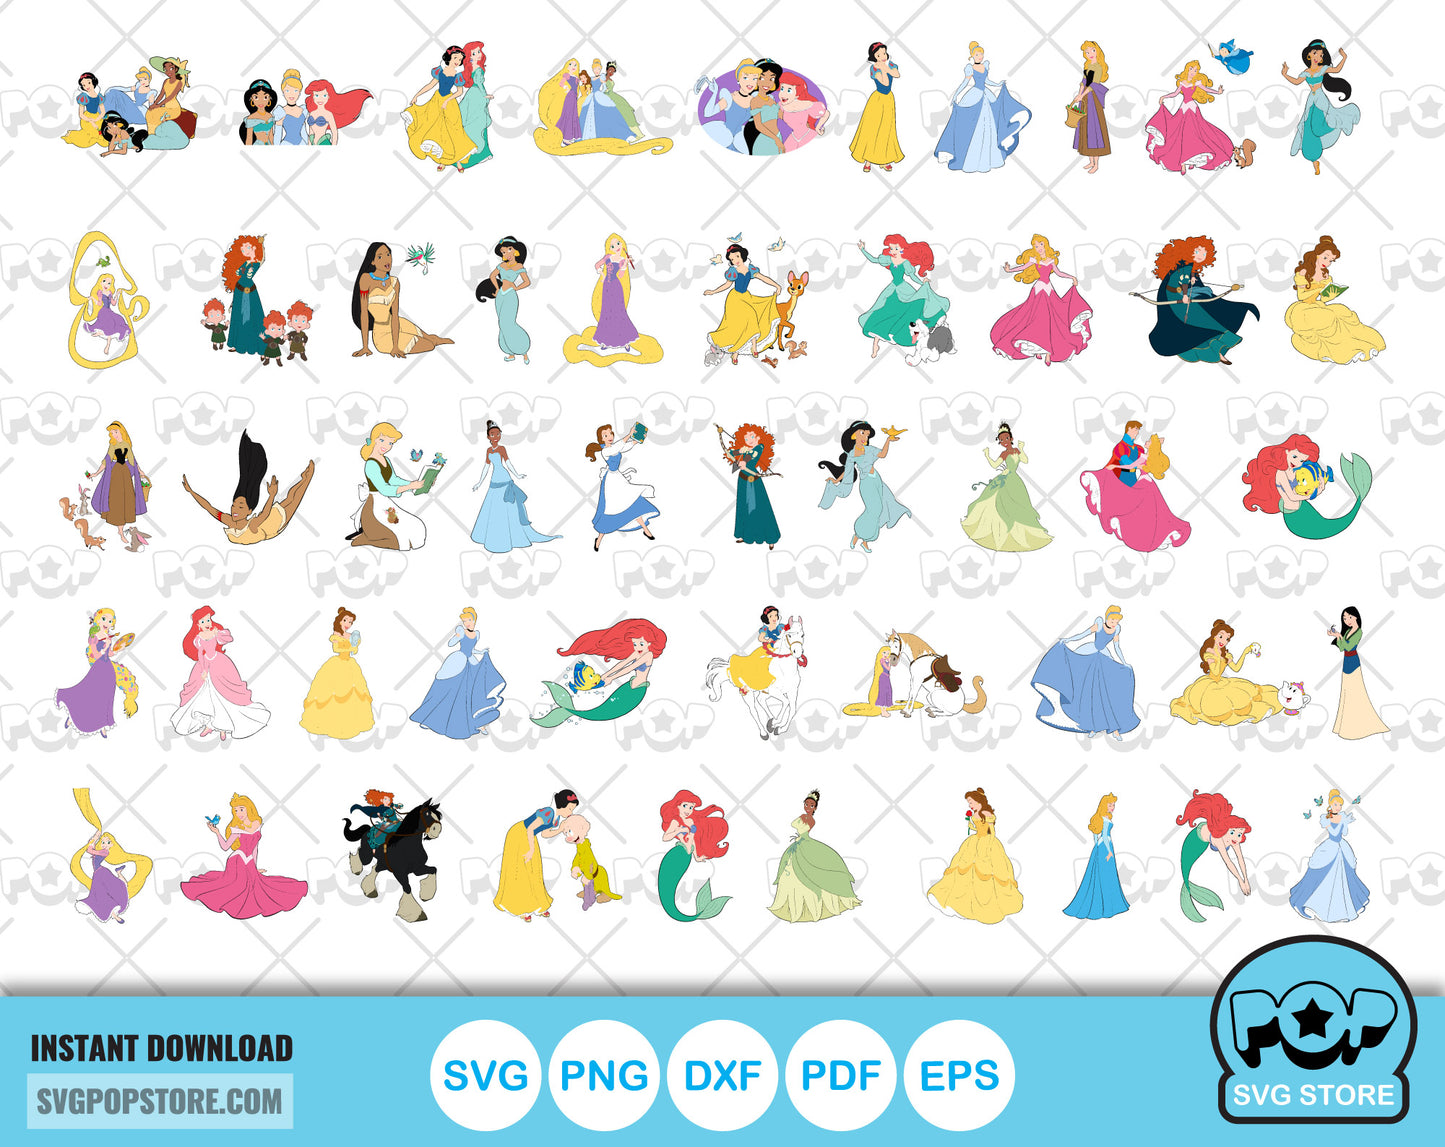 Classic Princesses 100 cliparts bundle, Disney Princess svg cut files for Cricut / Silhouette, Princess png